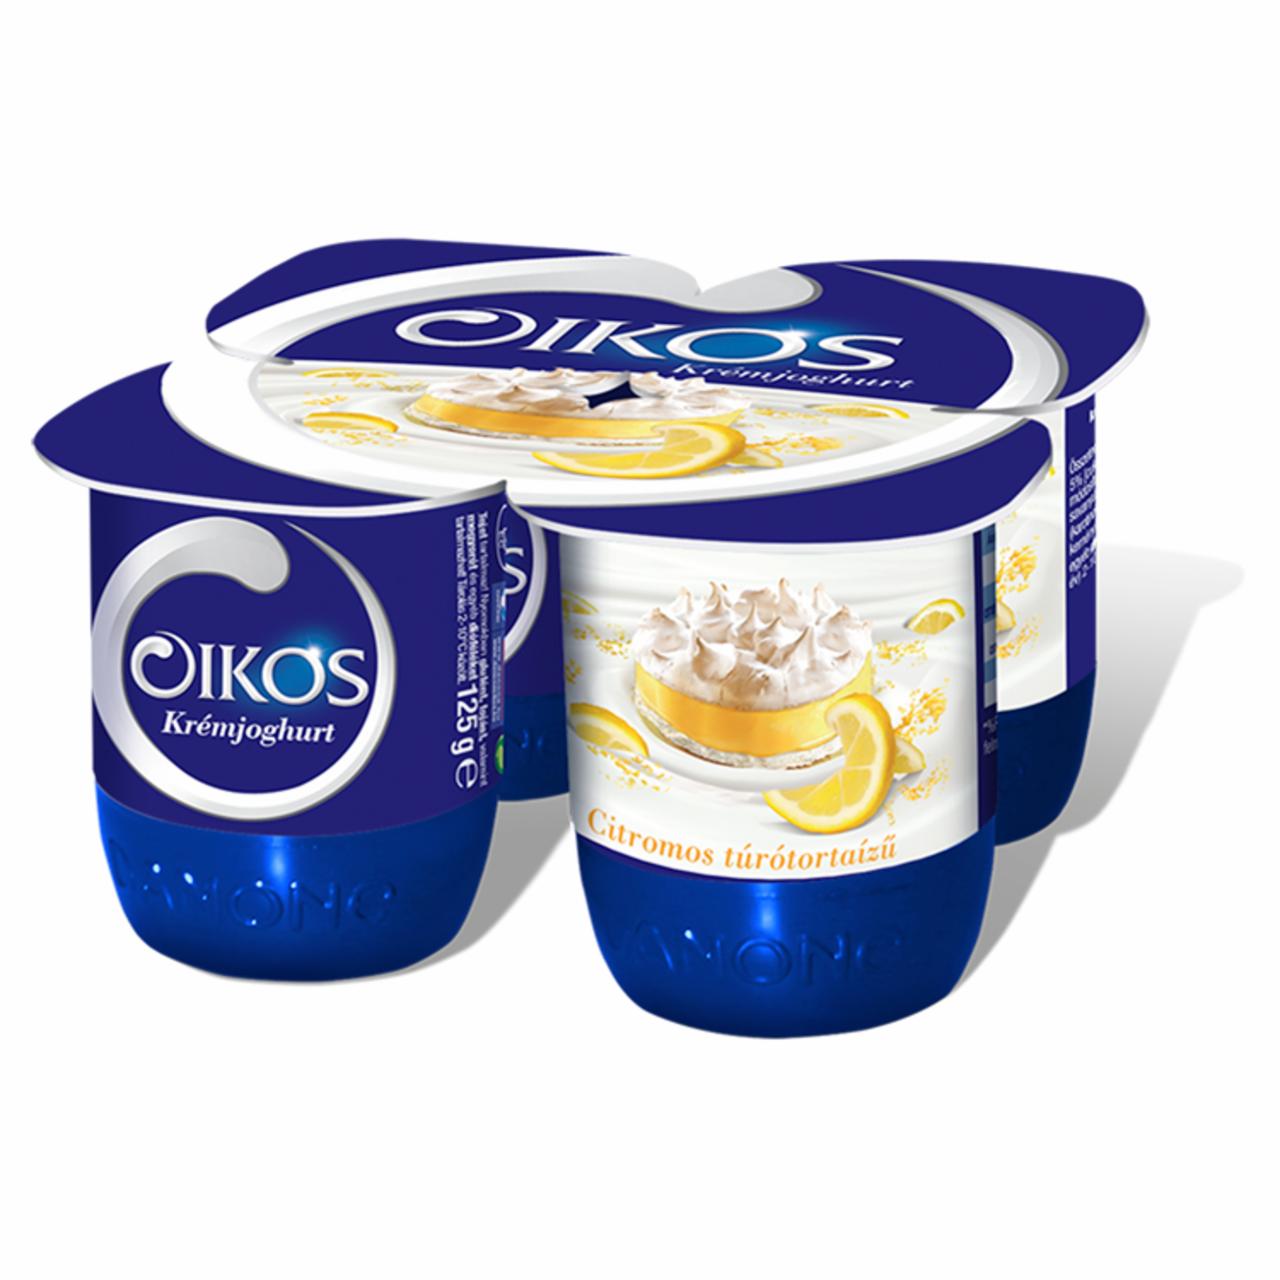 Képek - Danone Oikos Görög citromos túrótortaízű, élőflórás krémjoghurt 125 g